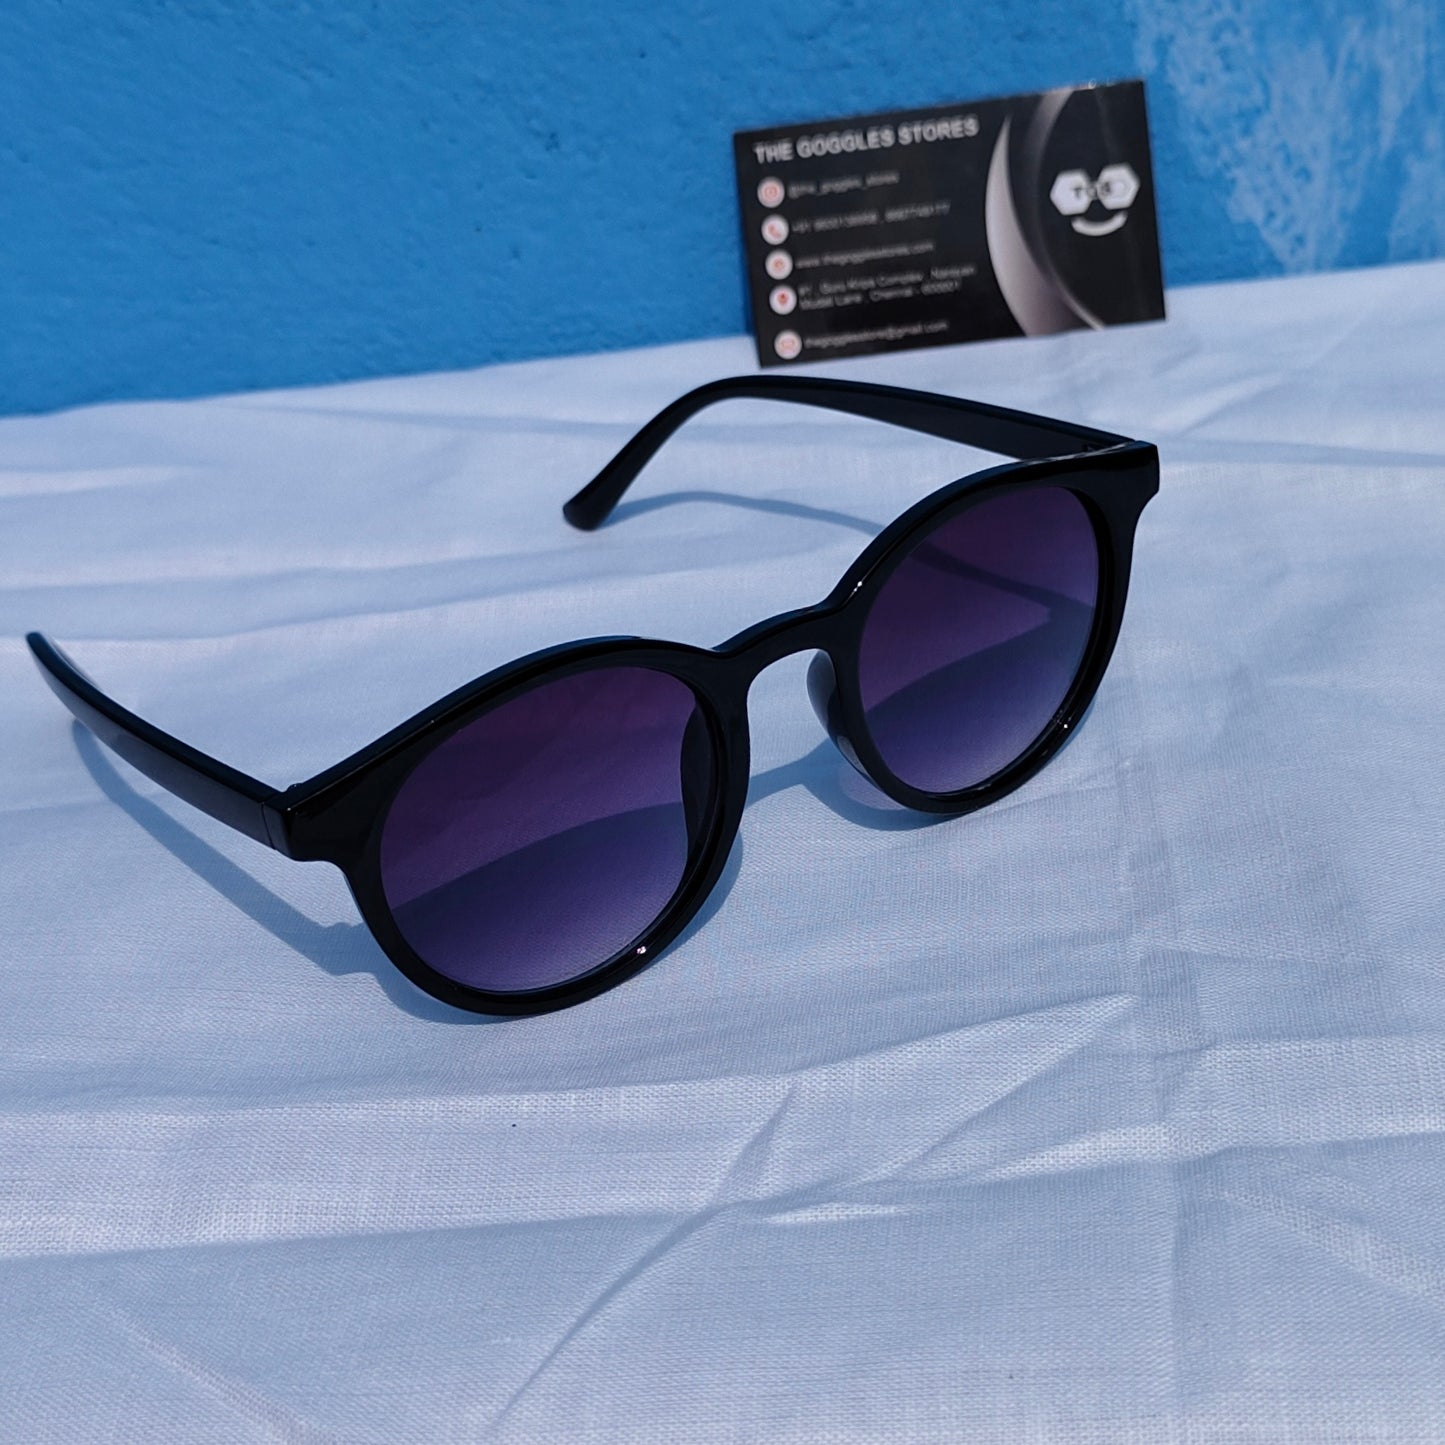 Classic round unisex sunglasses